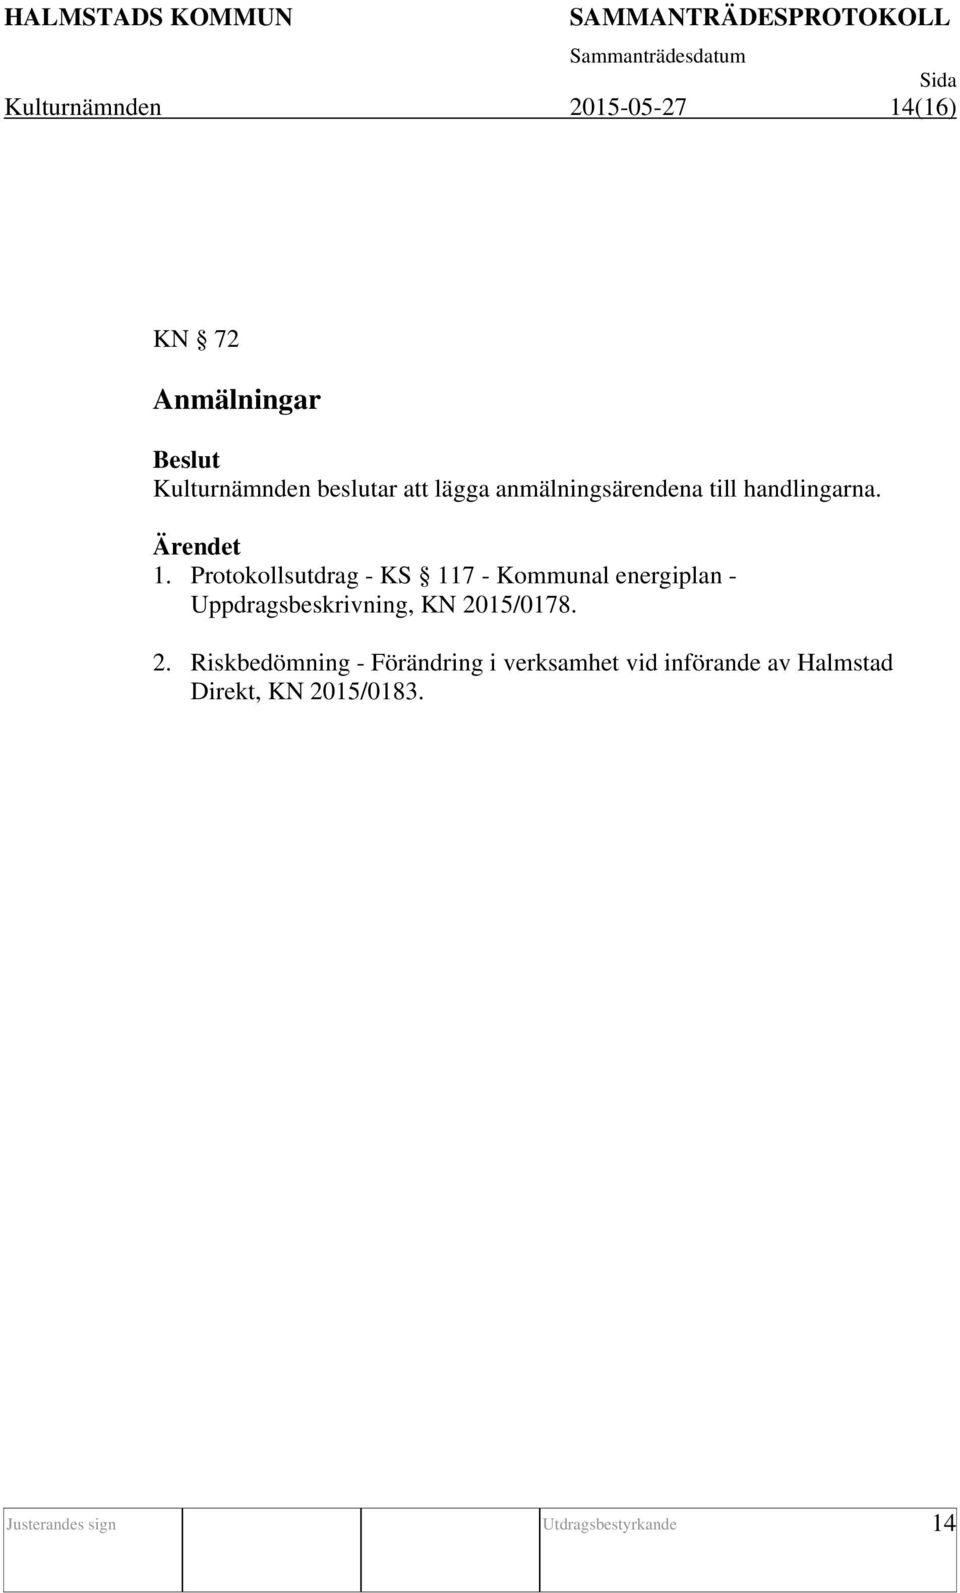 Protokollsutdrag - KS 117 - Kommunal energiplan - Uppdragsbeskrivning, KN 2015/0178.